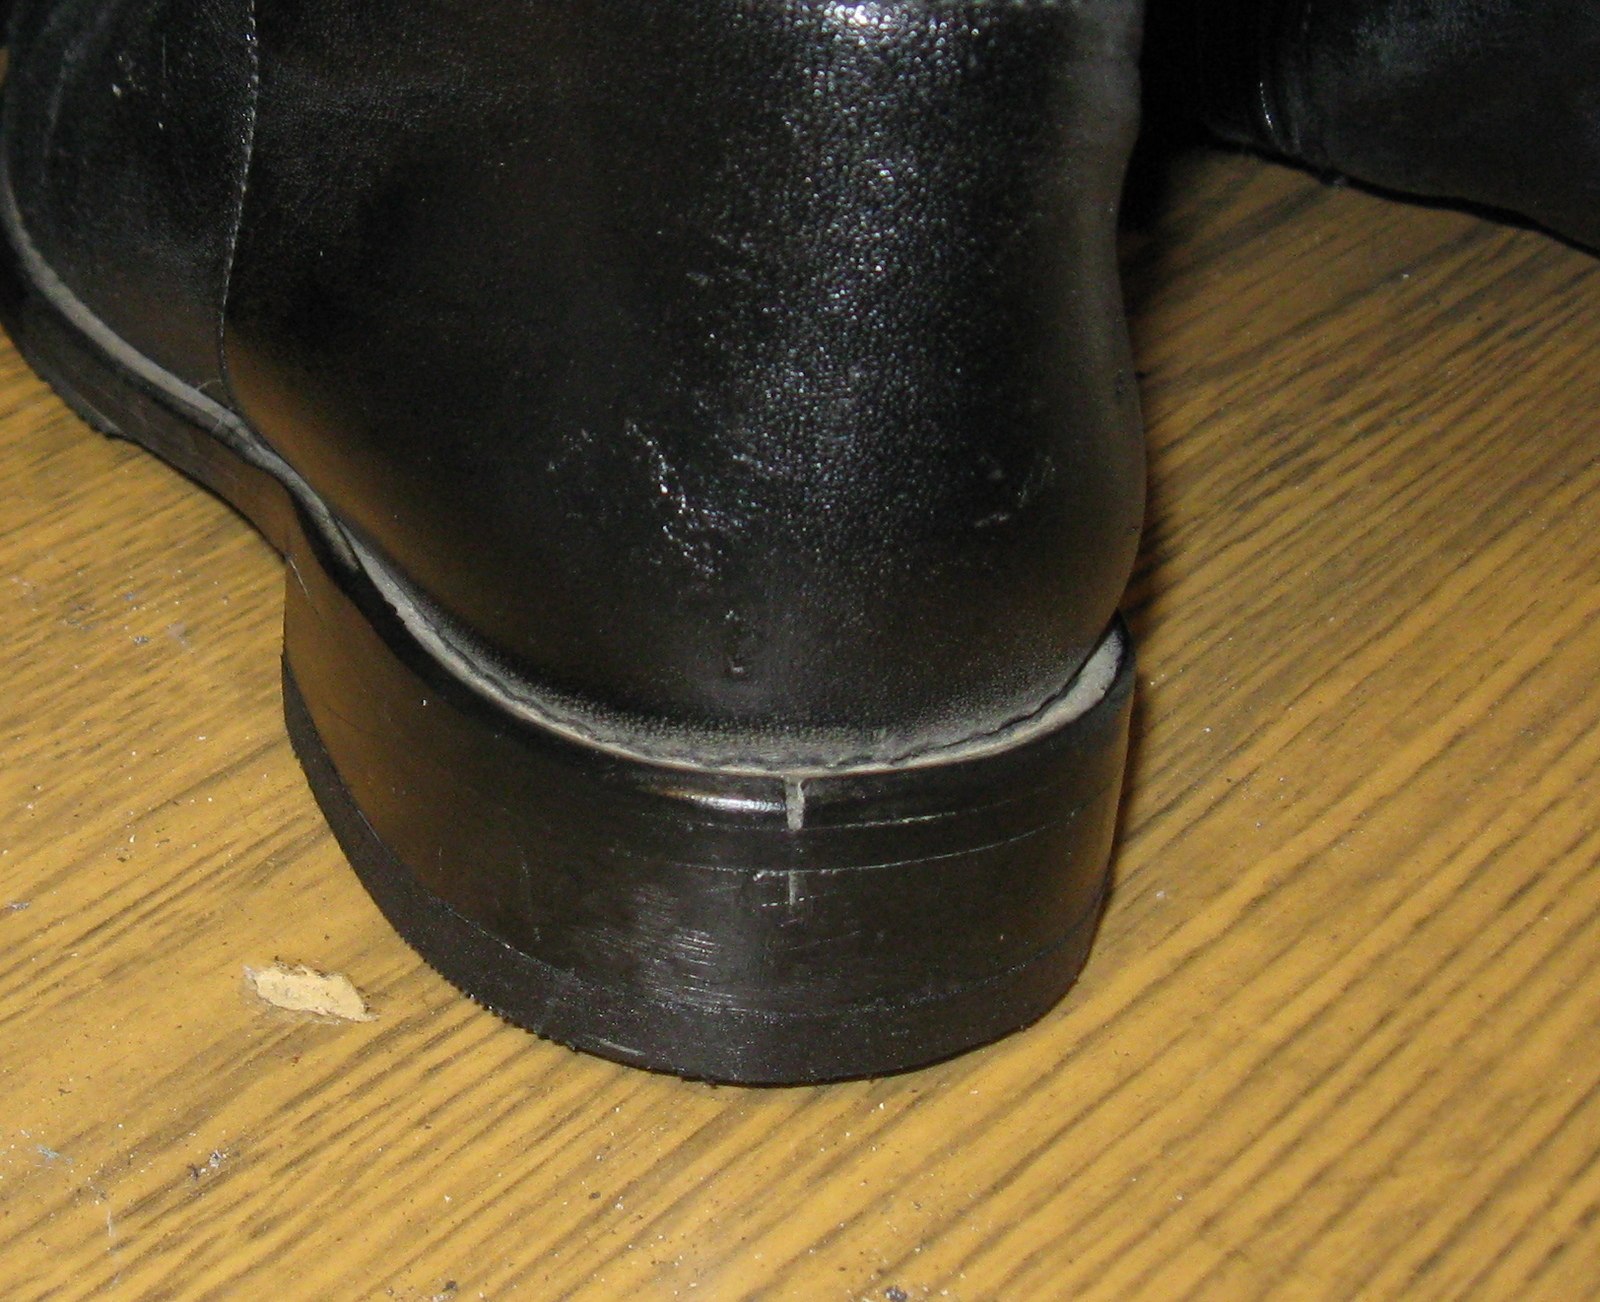 Трещины на ботинках